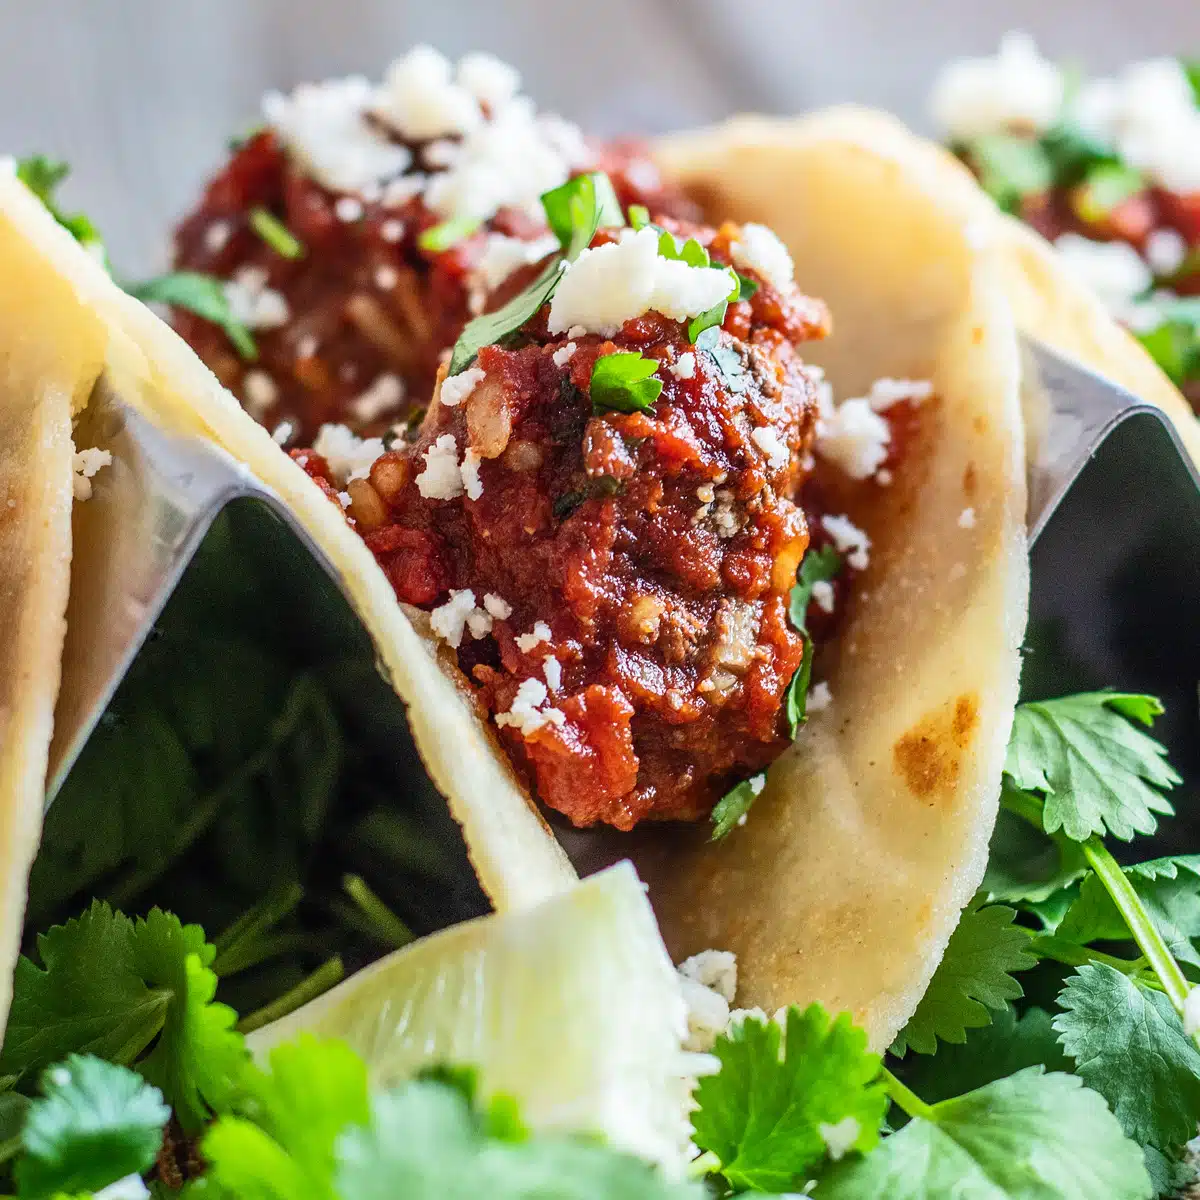 A melhor receita de tacos de albondigas com fartas almôndegas mexicanas em um saboroso molho de tomate e pimenta chipotle.